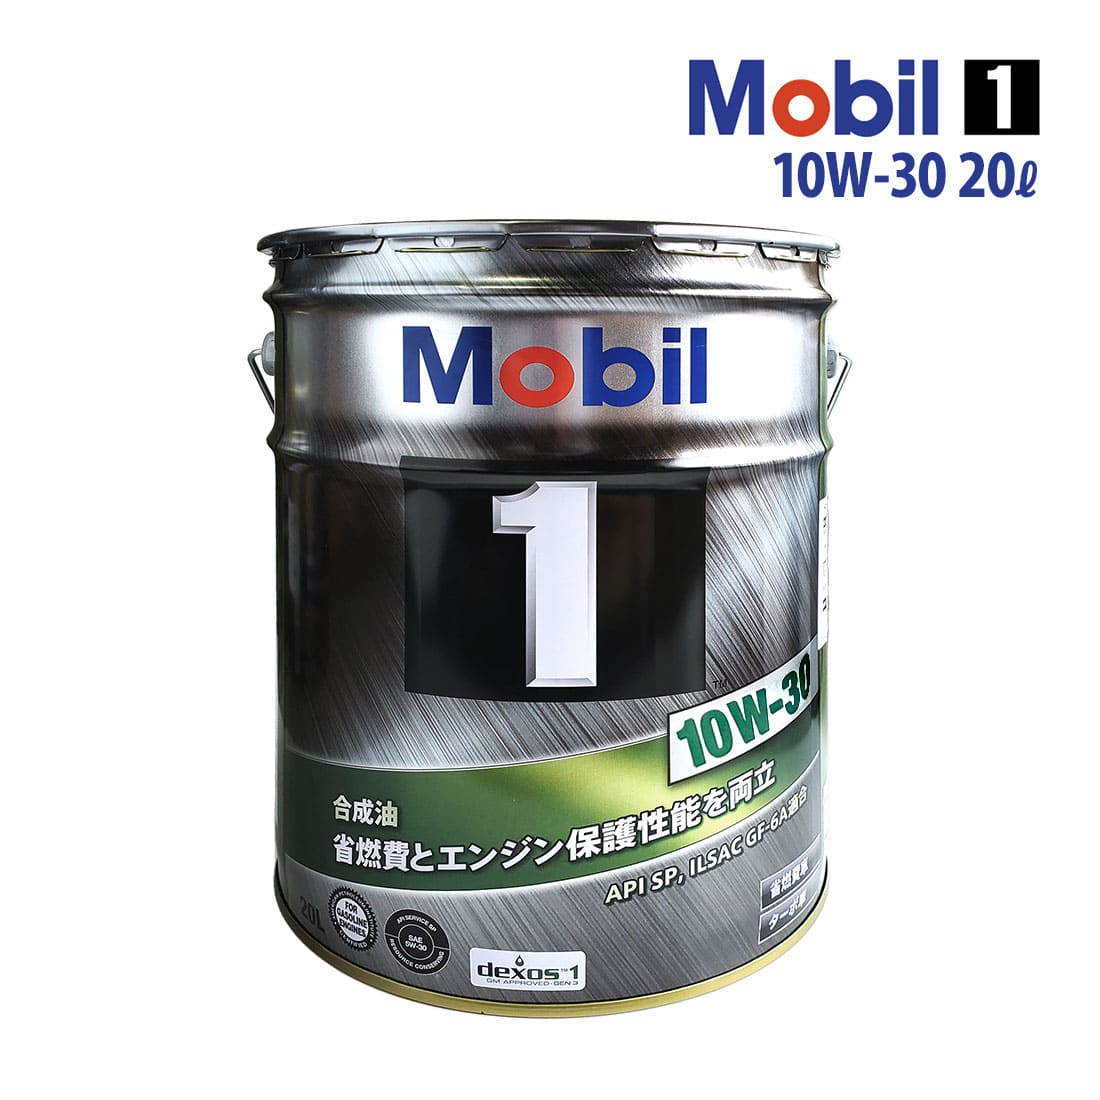 【お取り寄せ】エンジンオイル 10W-30 SP Mobil1 モービル1 20L缶 (20リットル) ペール缶